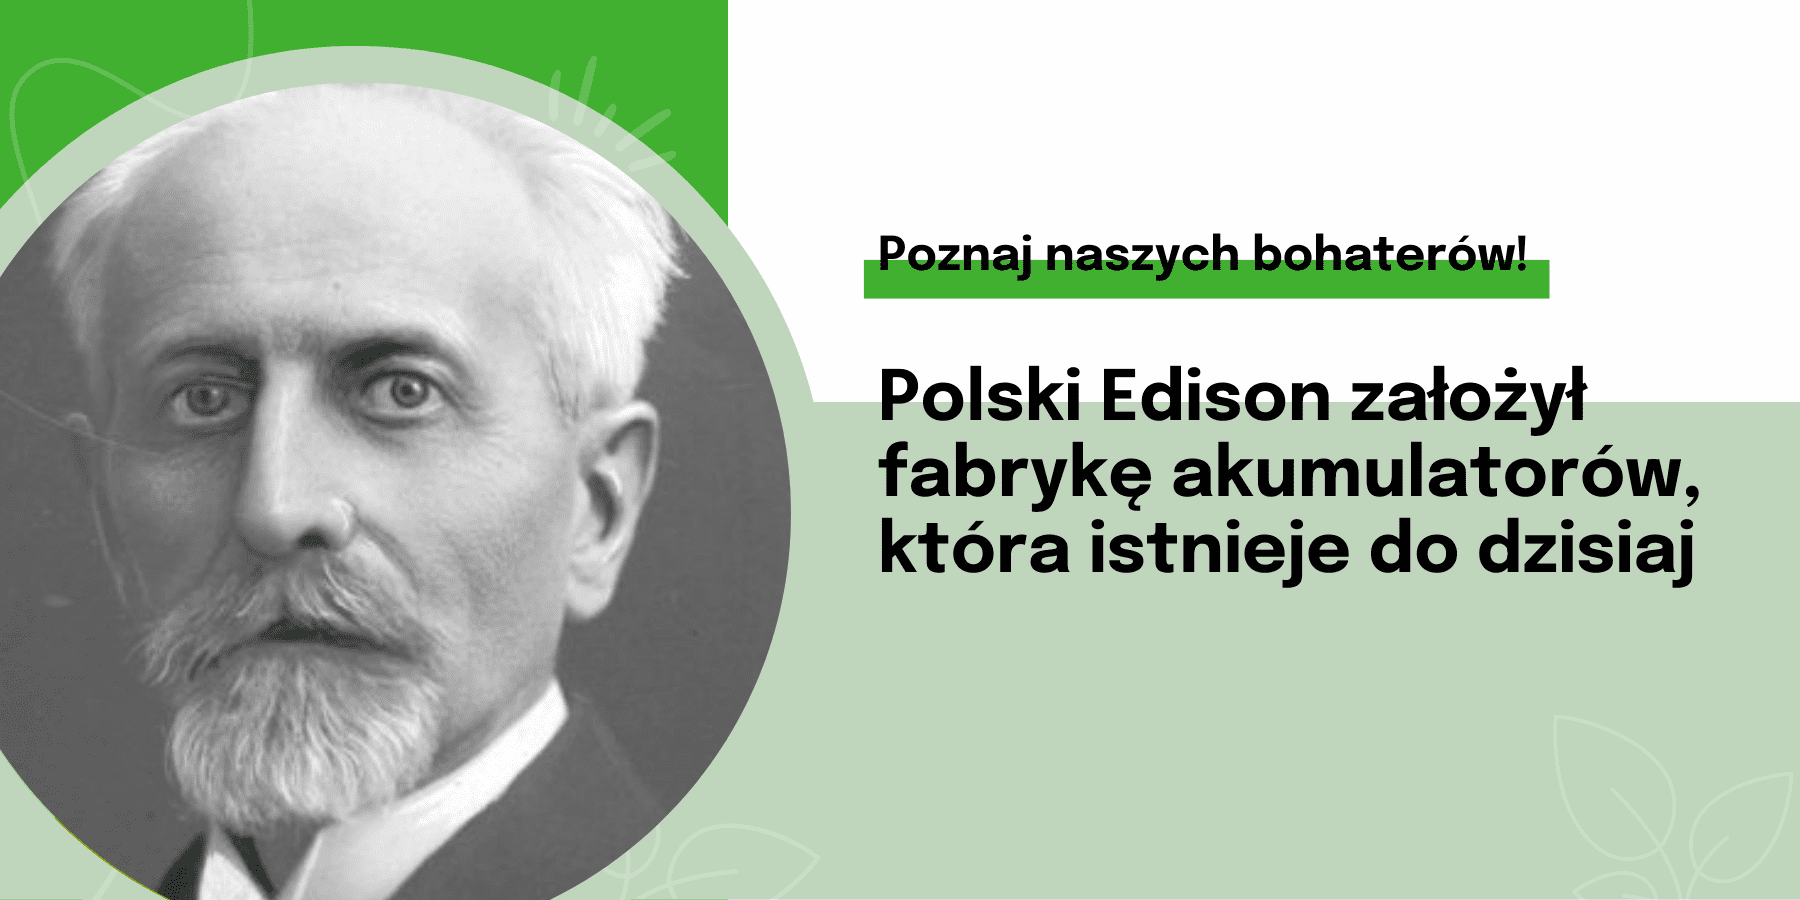 Polski Edison założył fabrykę akumulatorów, która istnieje do dzisiaj